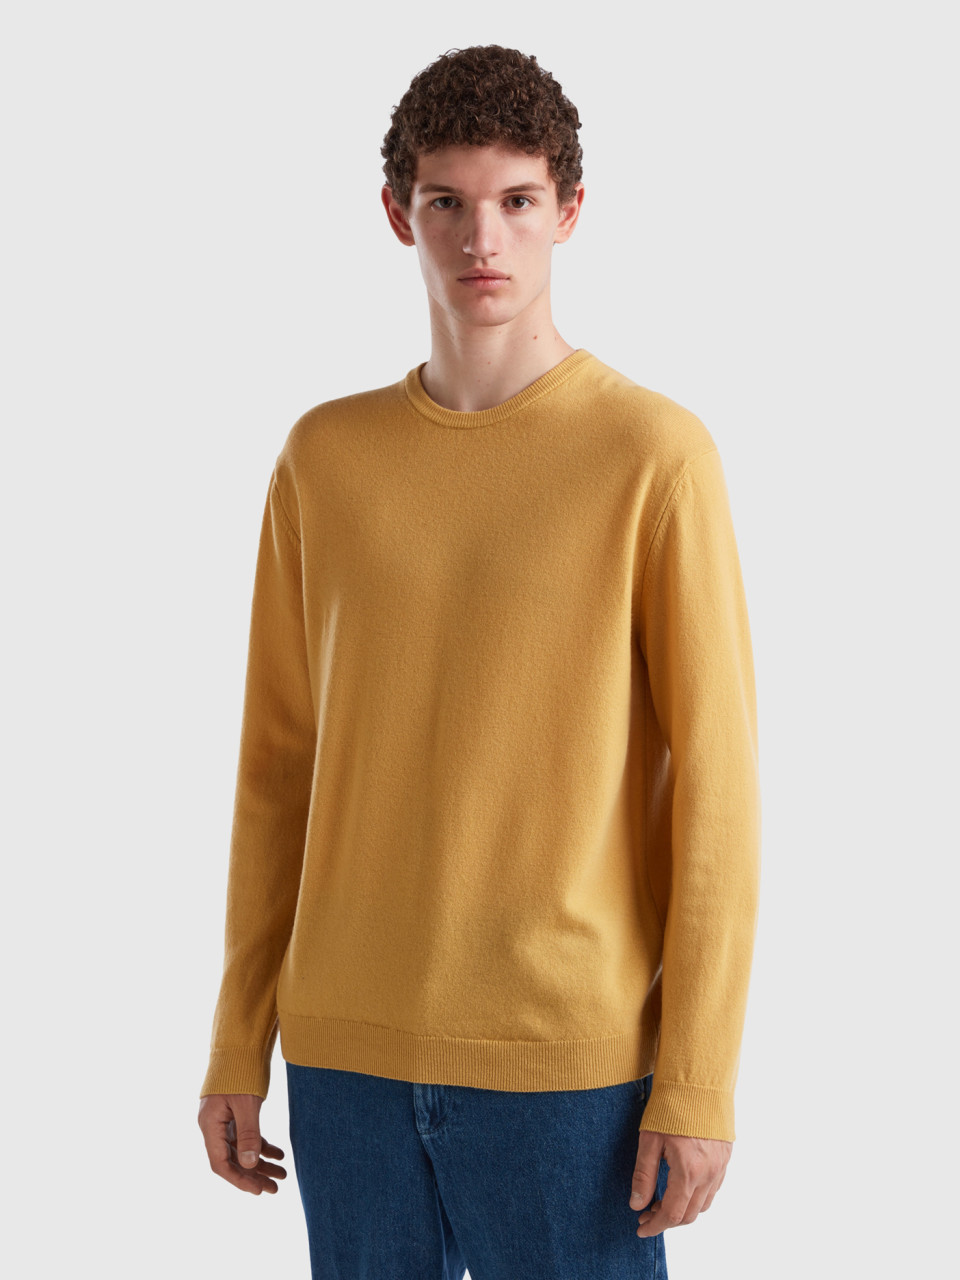 Benetton, Ocher Yellow Crew Neck Sweater In Pure Merino Wool, Mustard, Men